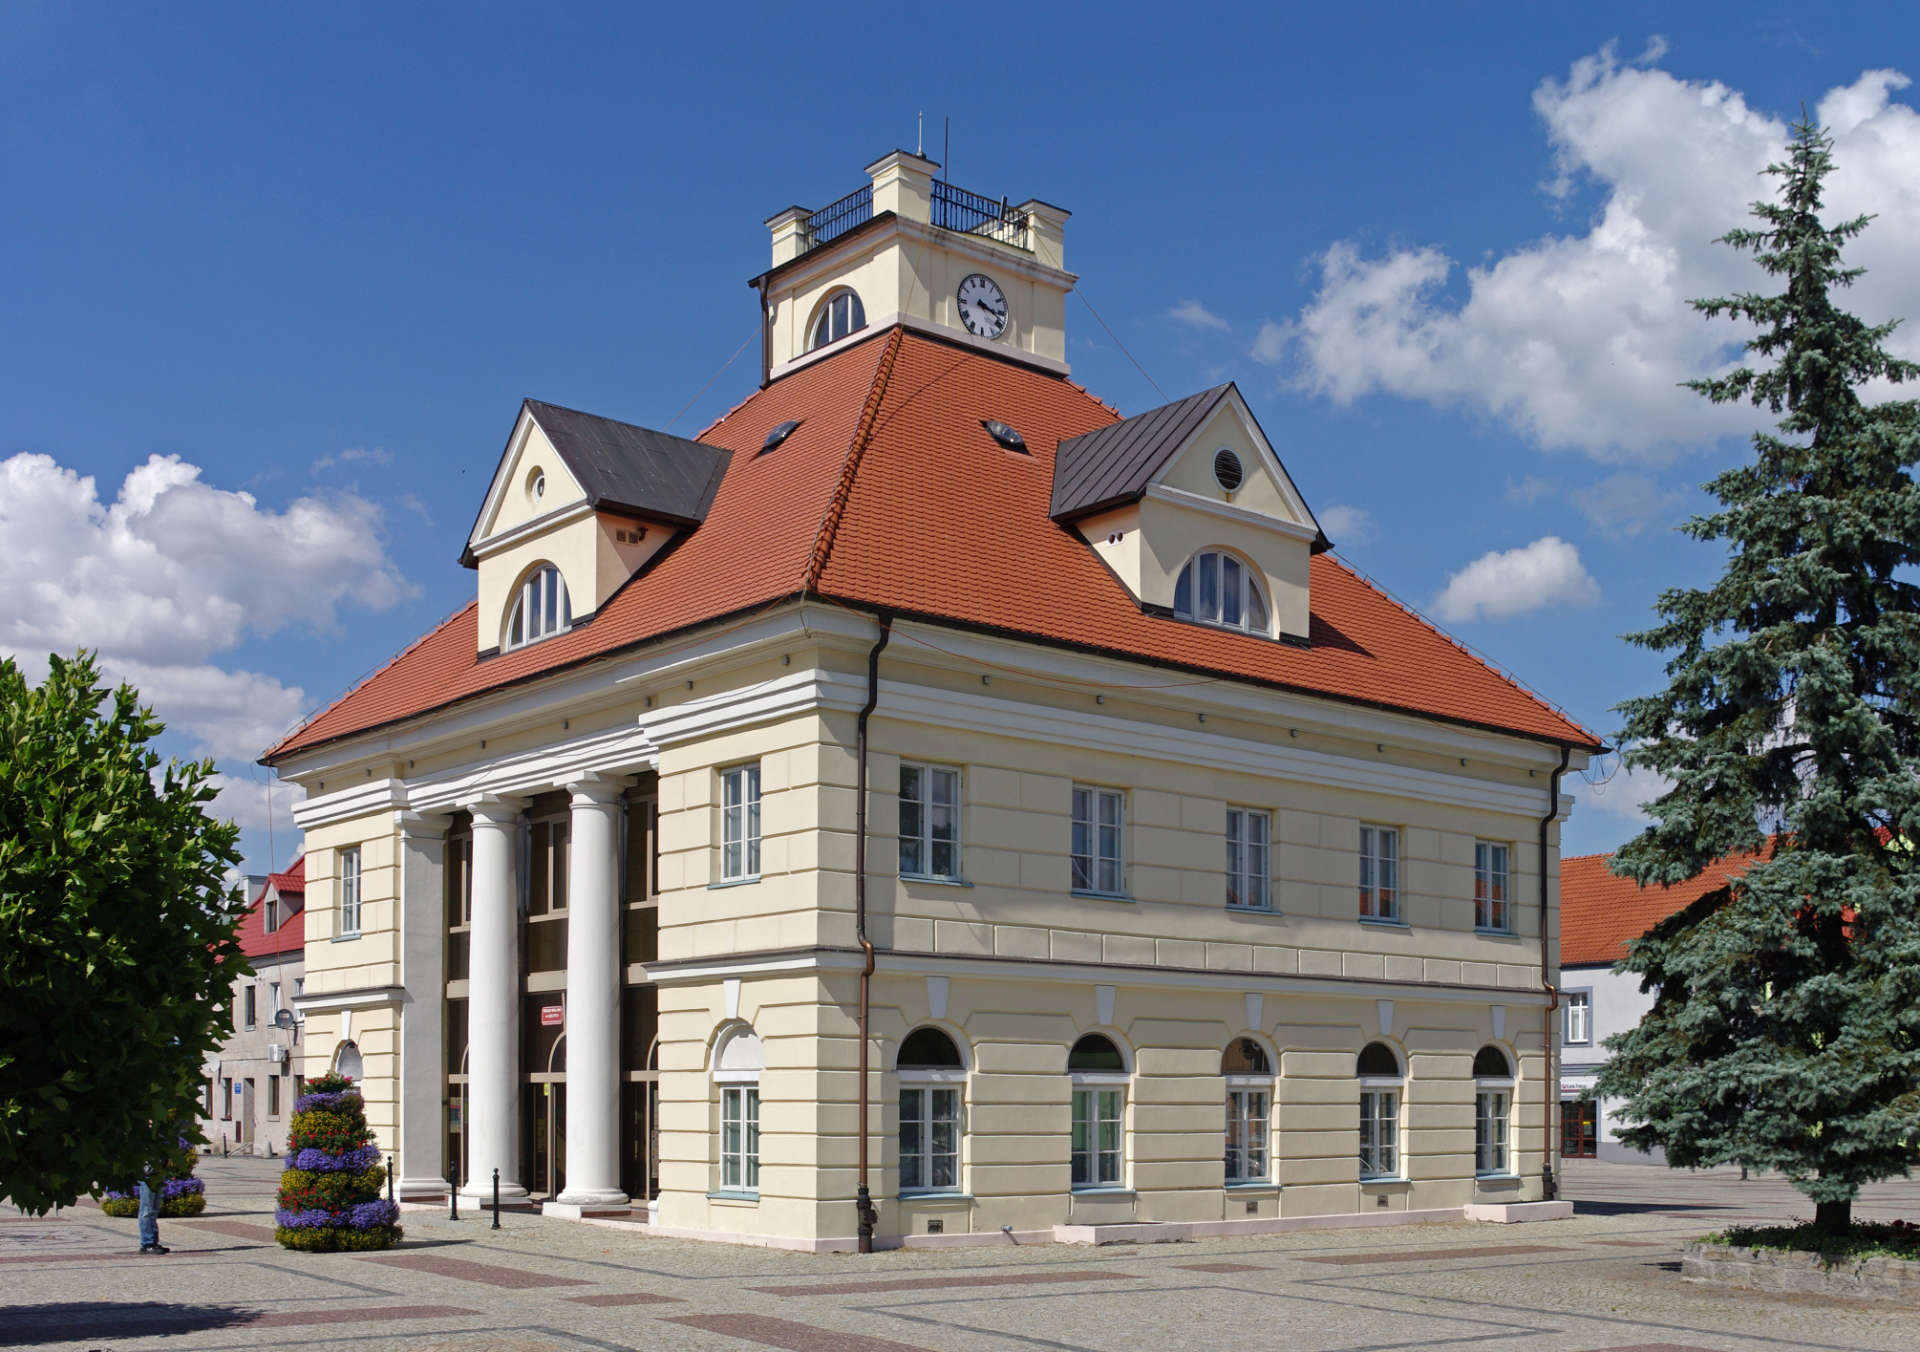 Zu sehen ist das Rathaus von Łęczyca, Bild: Chrumps.jpg